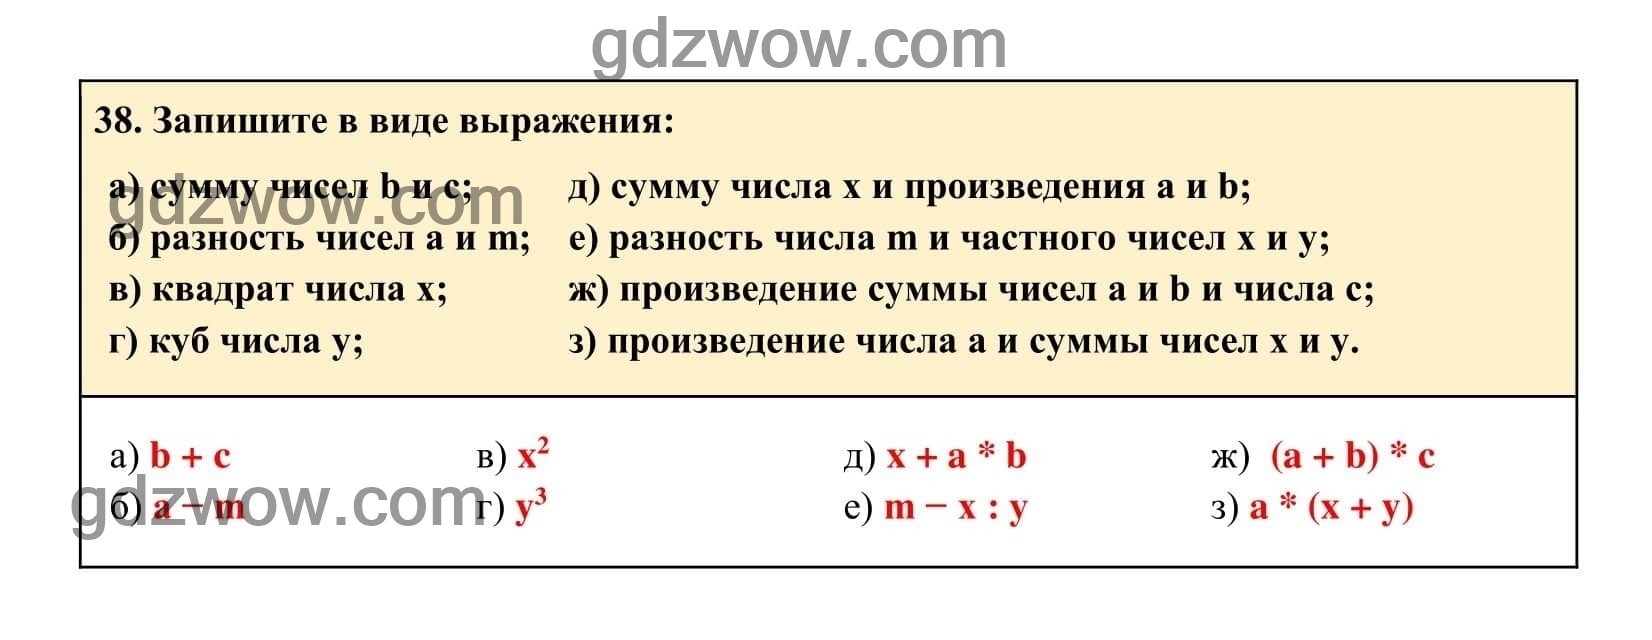 Упражнение 38 - ГДЗ по Алгебре 7 класс Учебник Макарычев (решебник) - GDZwow